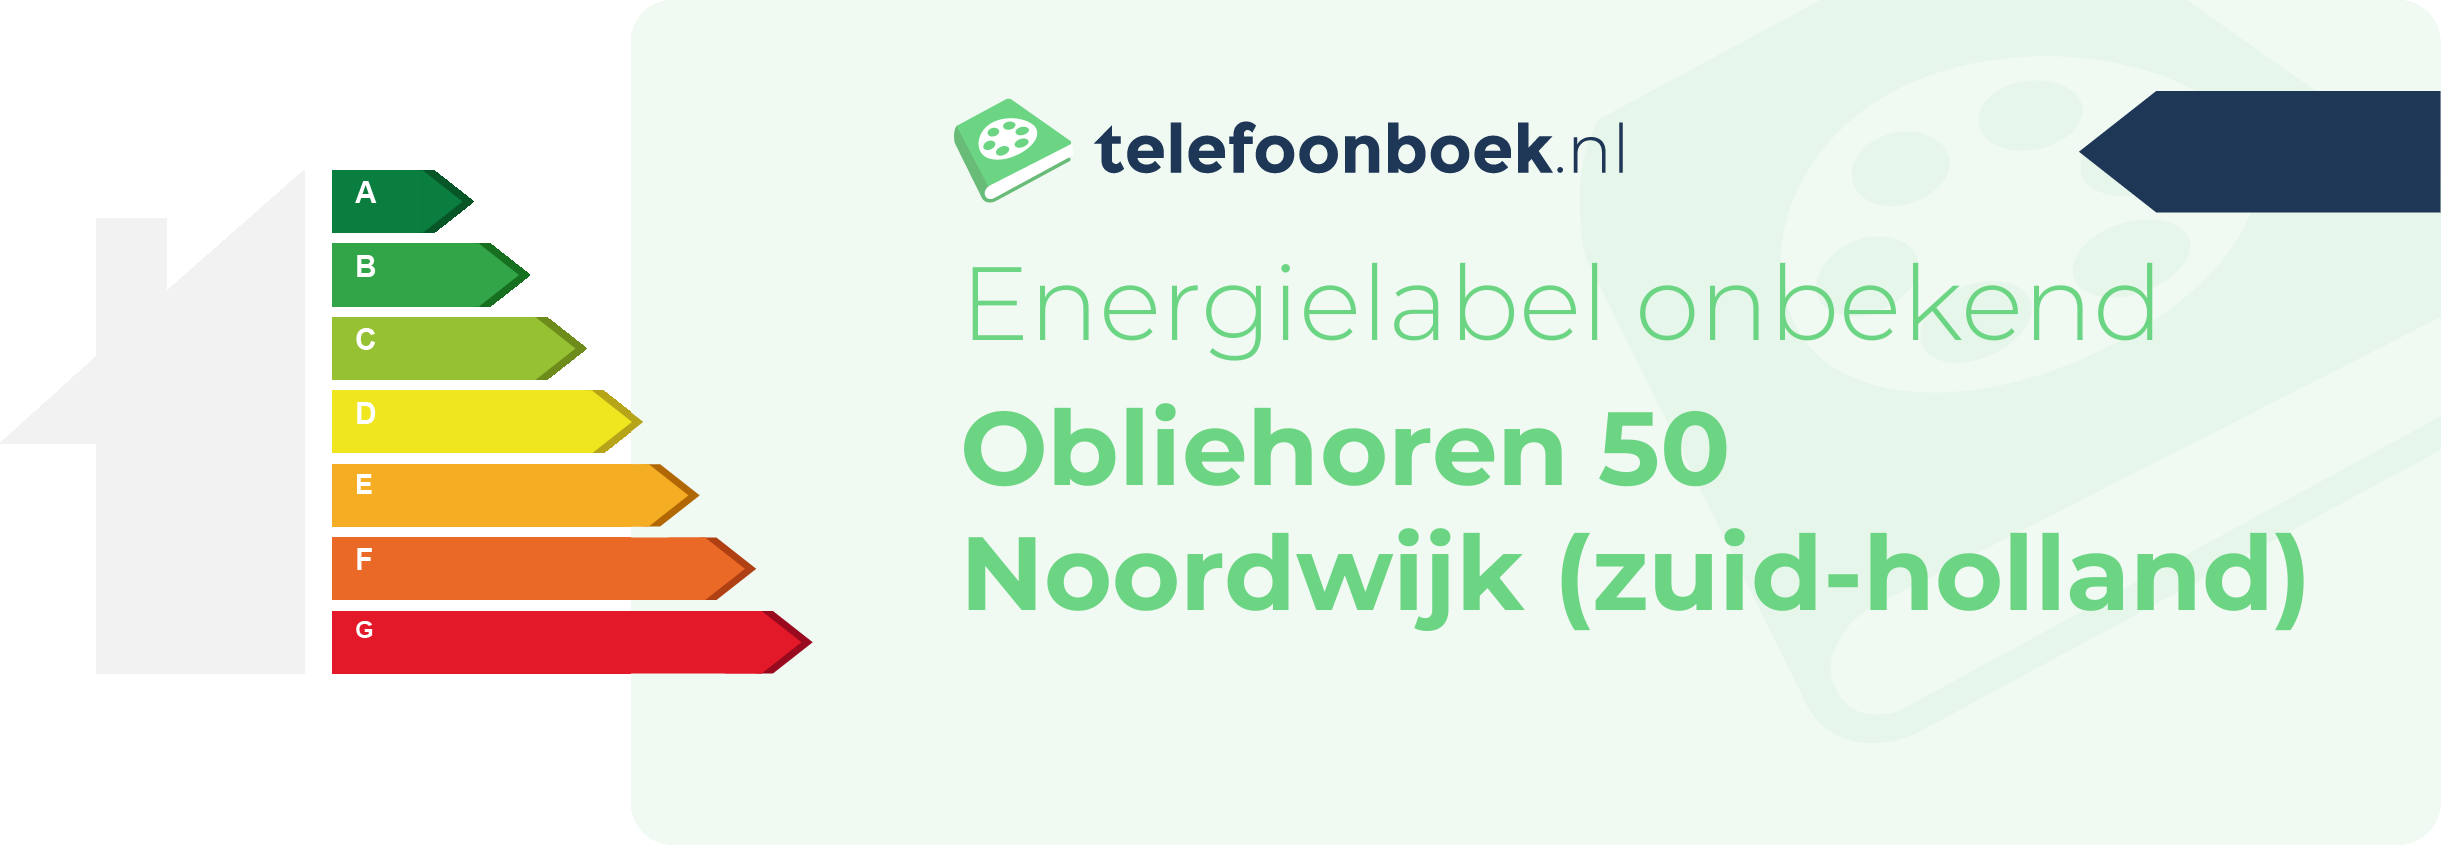 Energielabel Obliehoren 50 Noordwijk (Zuid-Holland)